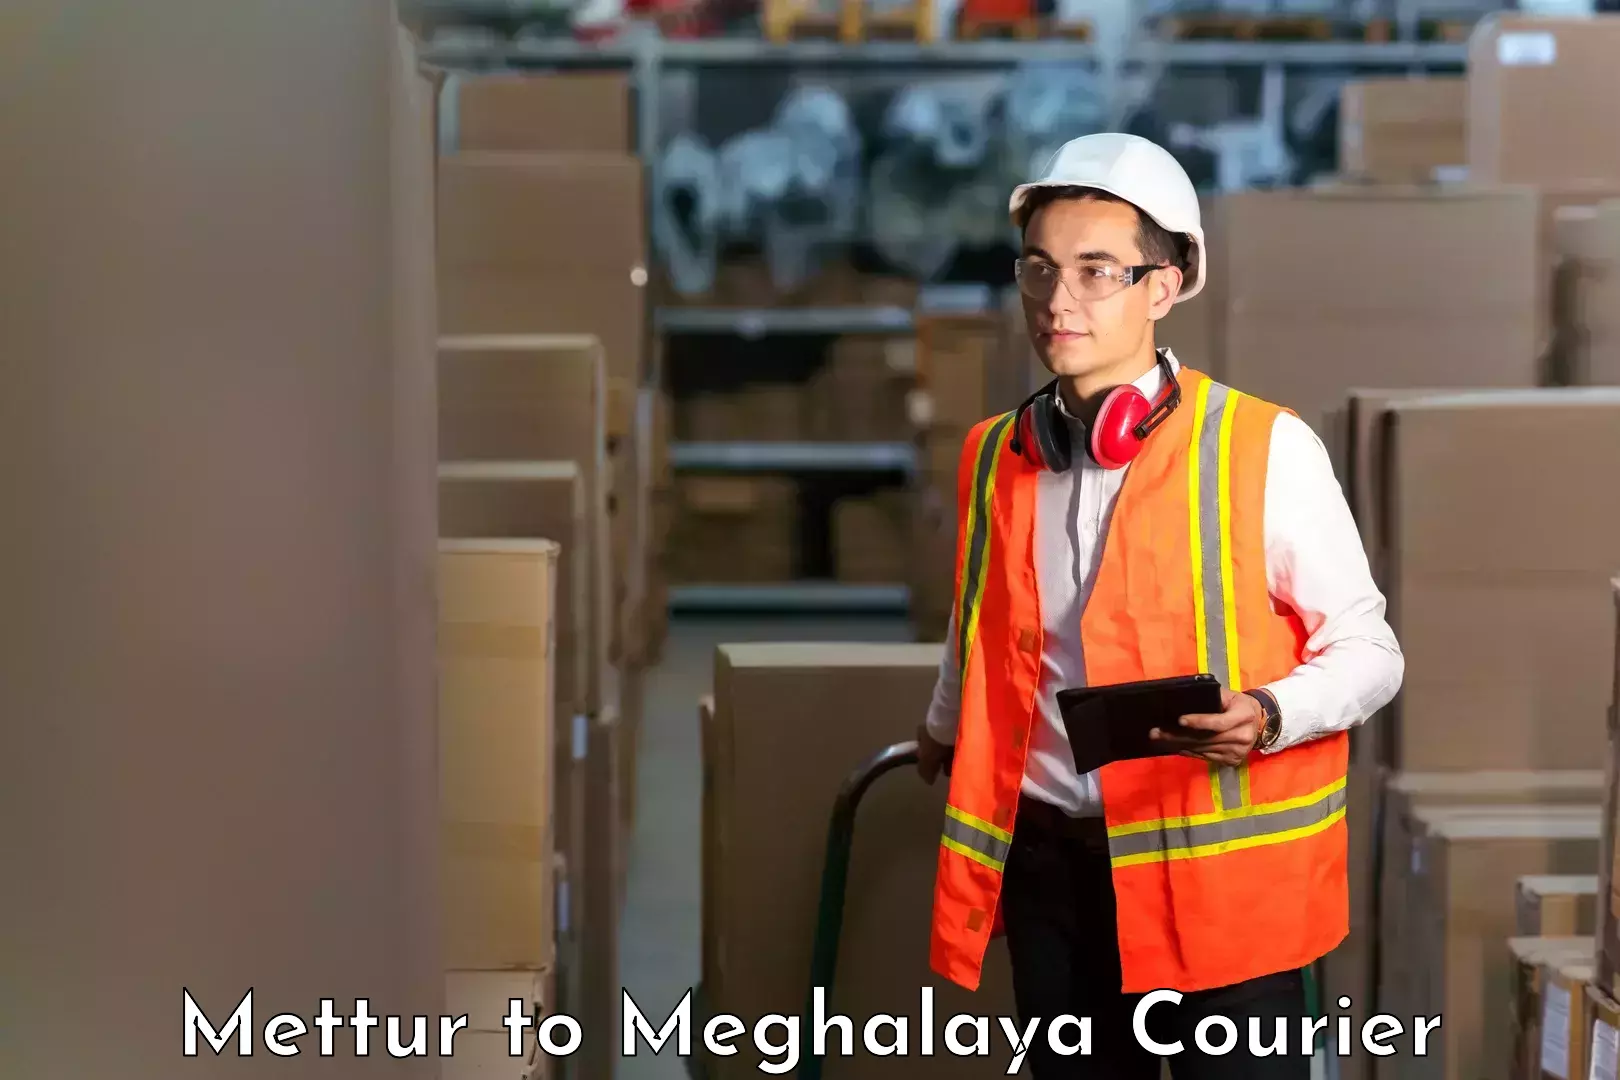 Next-generation courier services Mettur to Dkhiah West